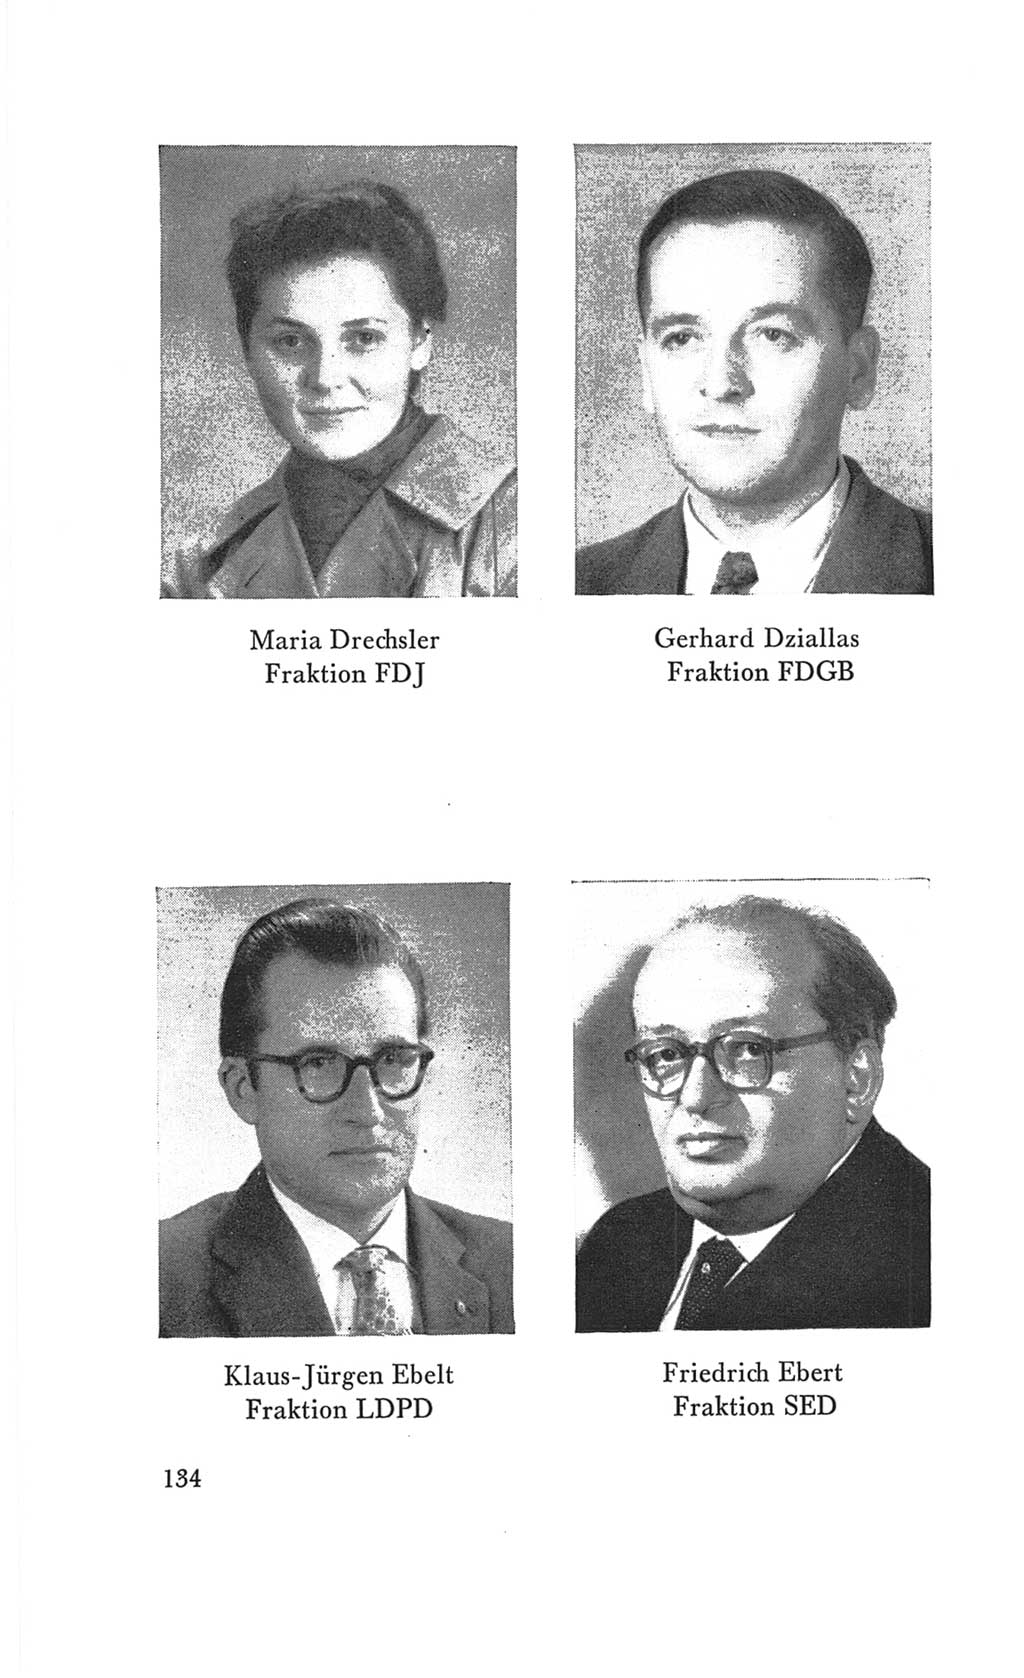 Handbuch der Volkskammer (VK) der Deutschen Demokratischen Republik (DDR), 3. Wahlperiode 1958-1963, Seite 134 (Hdb. VK. DDR 3. WP. 1958-1963, S. 134)